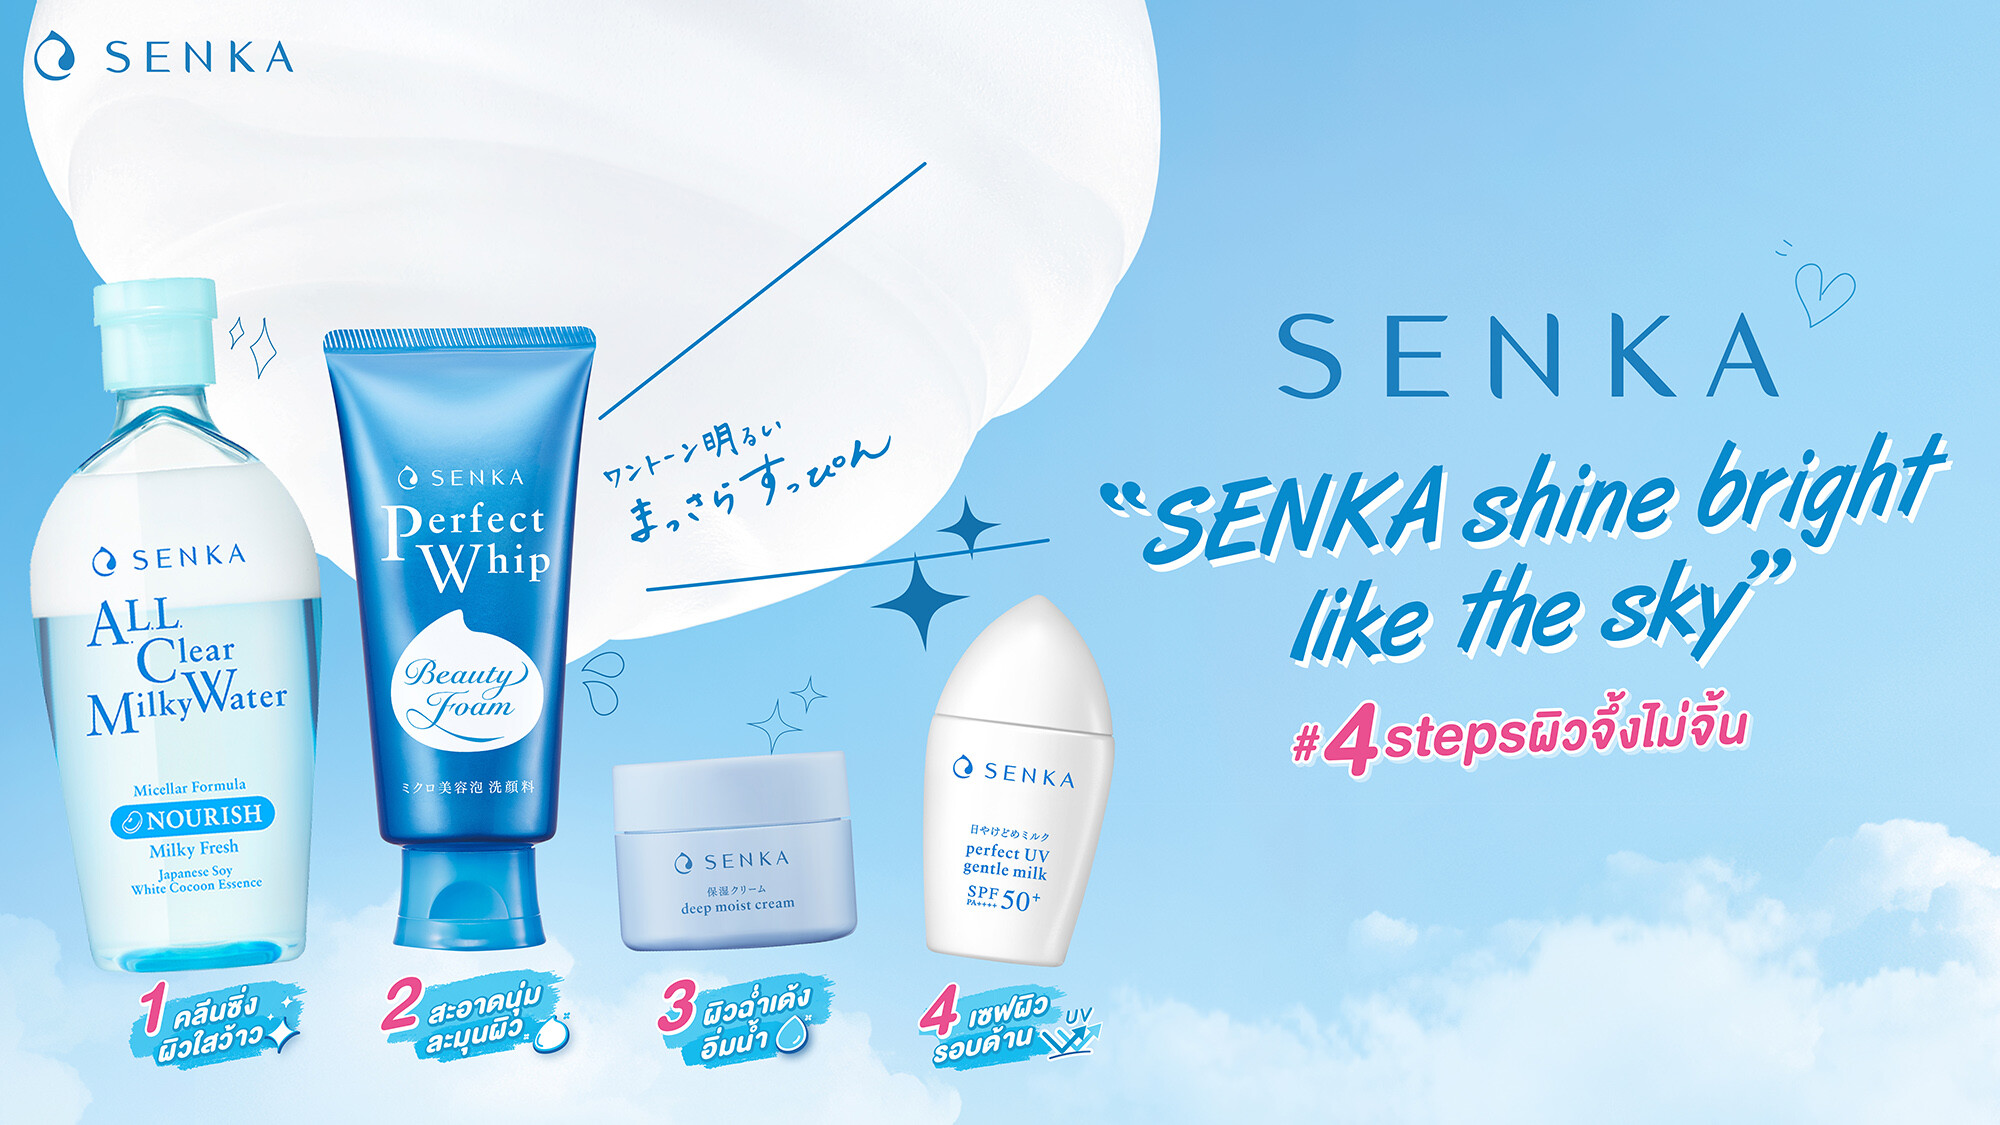 เซนกะ เปิดตัว SENKA Perfect Whip สูตรใหม่ โฉมใหม่ วิปโฟมล้างหน้ายอดนิยมจากประเทศญี่ปุ่น! พร้อมยกขบวน "เซนกะแก๊งหน้าใส" ที่ดูแลผิวครบ #4stepsผิวจึ้งไม่จิ้น